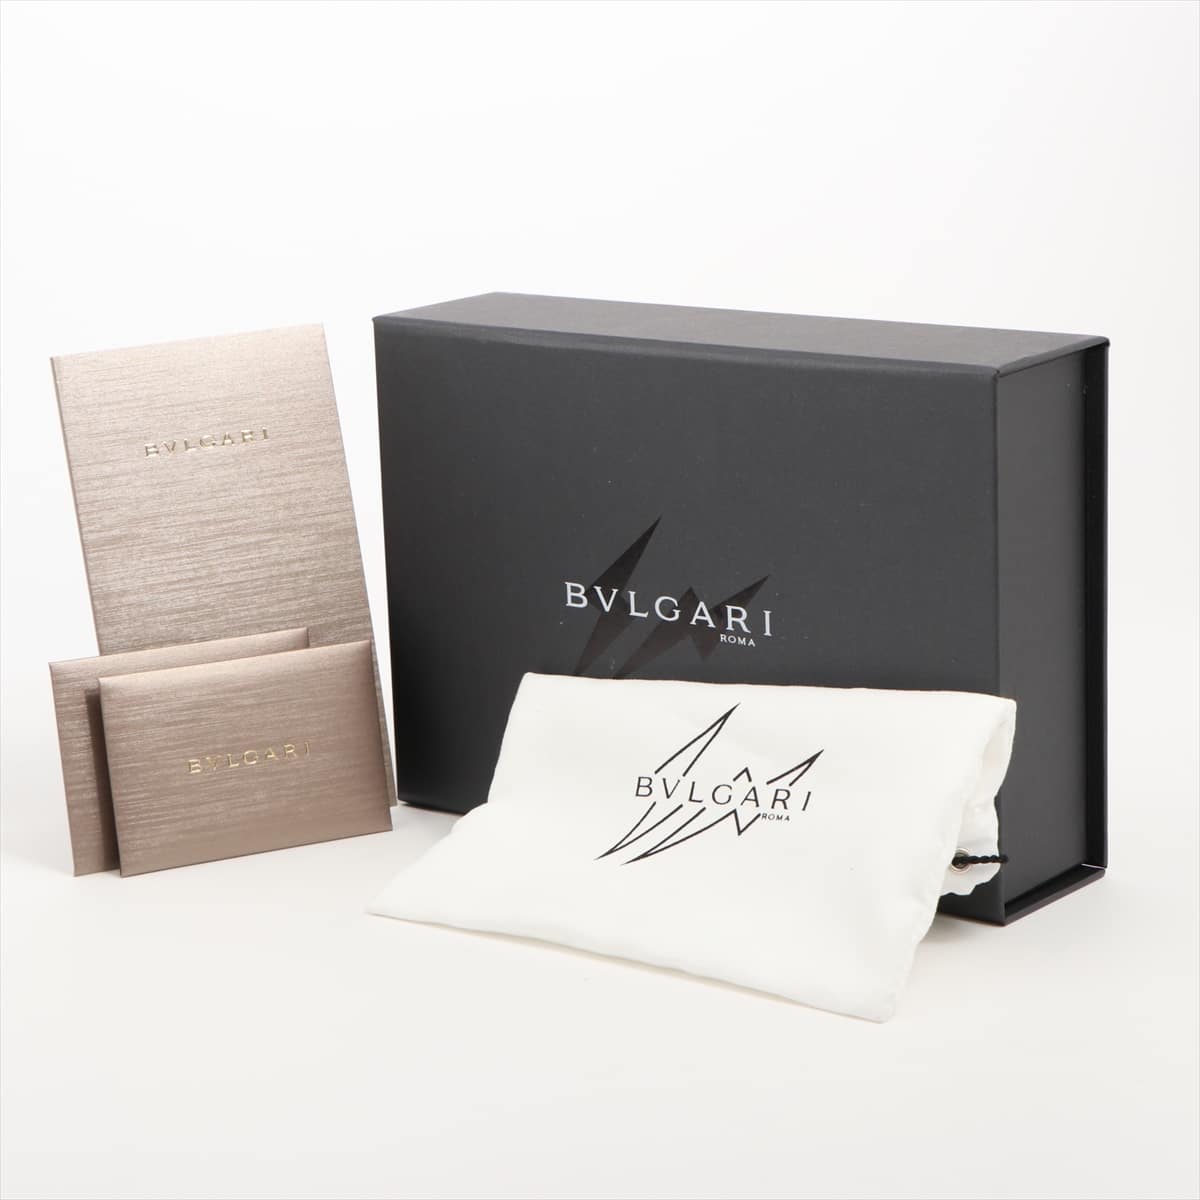 Bvlgari × Fragment Nylon & leather Coin case Black